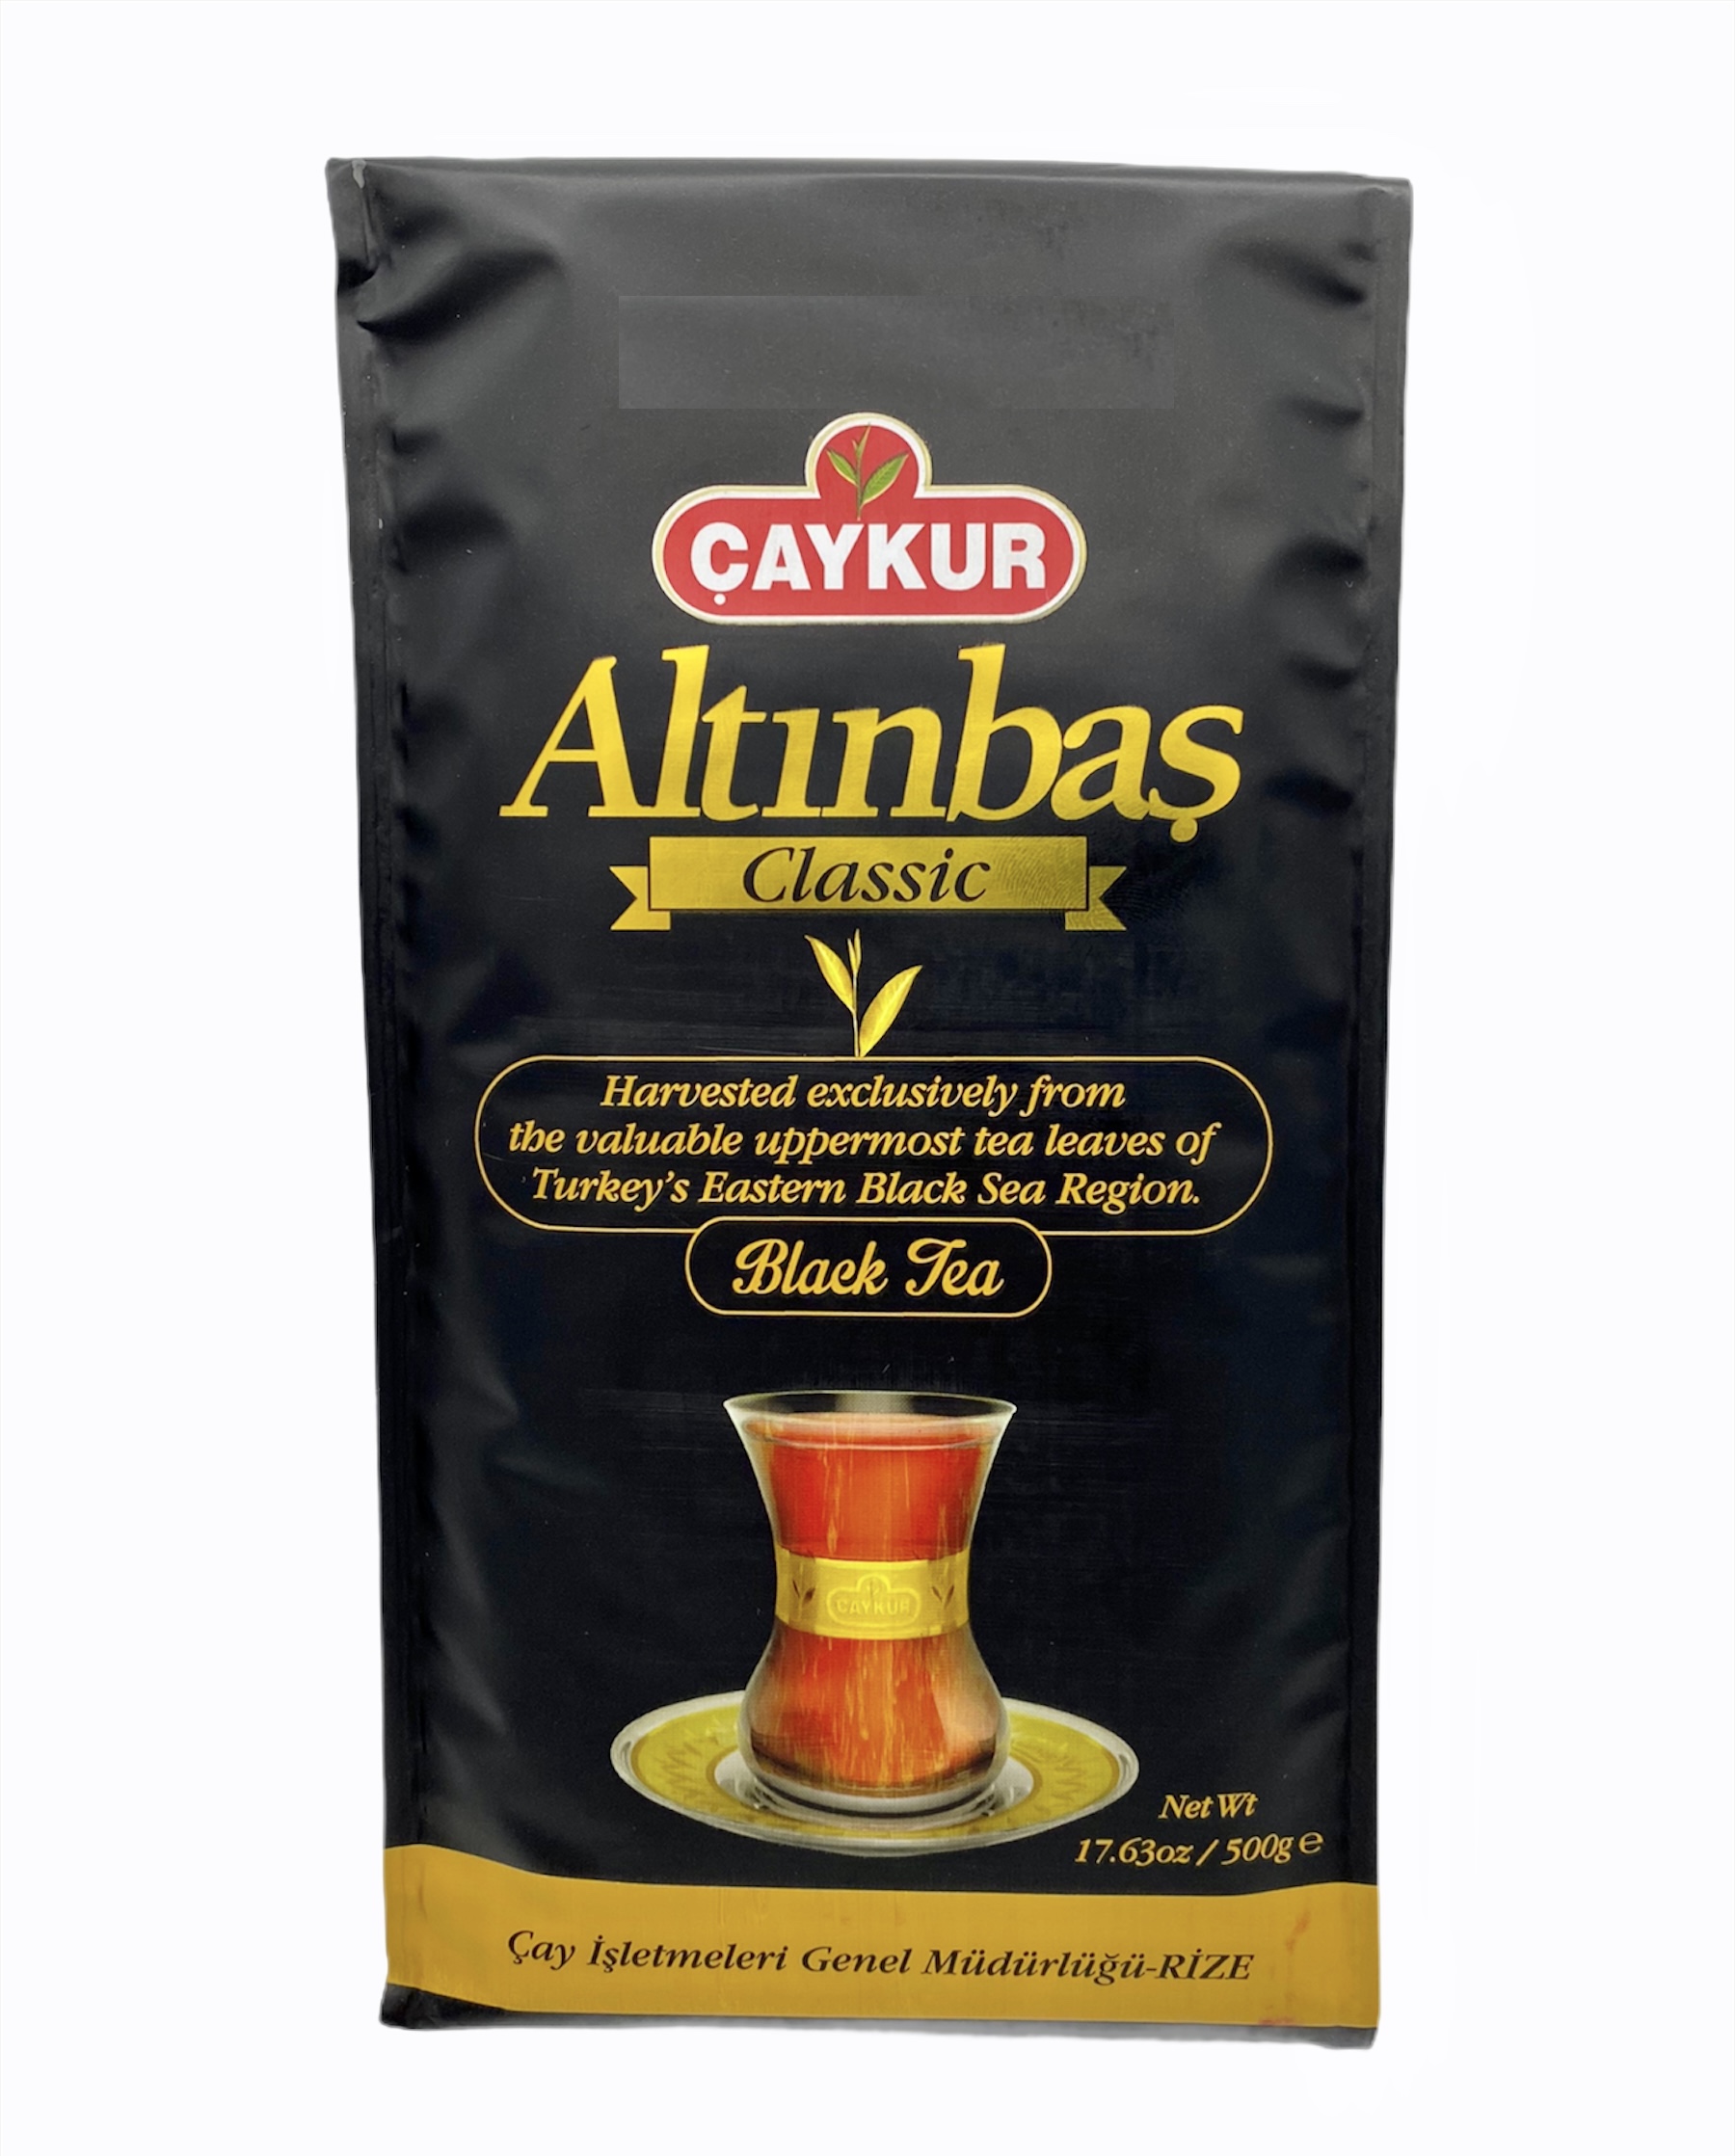 Premium Türkischer Tee ALTINBAS Klasik Cay 500 g CAYKUR